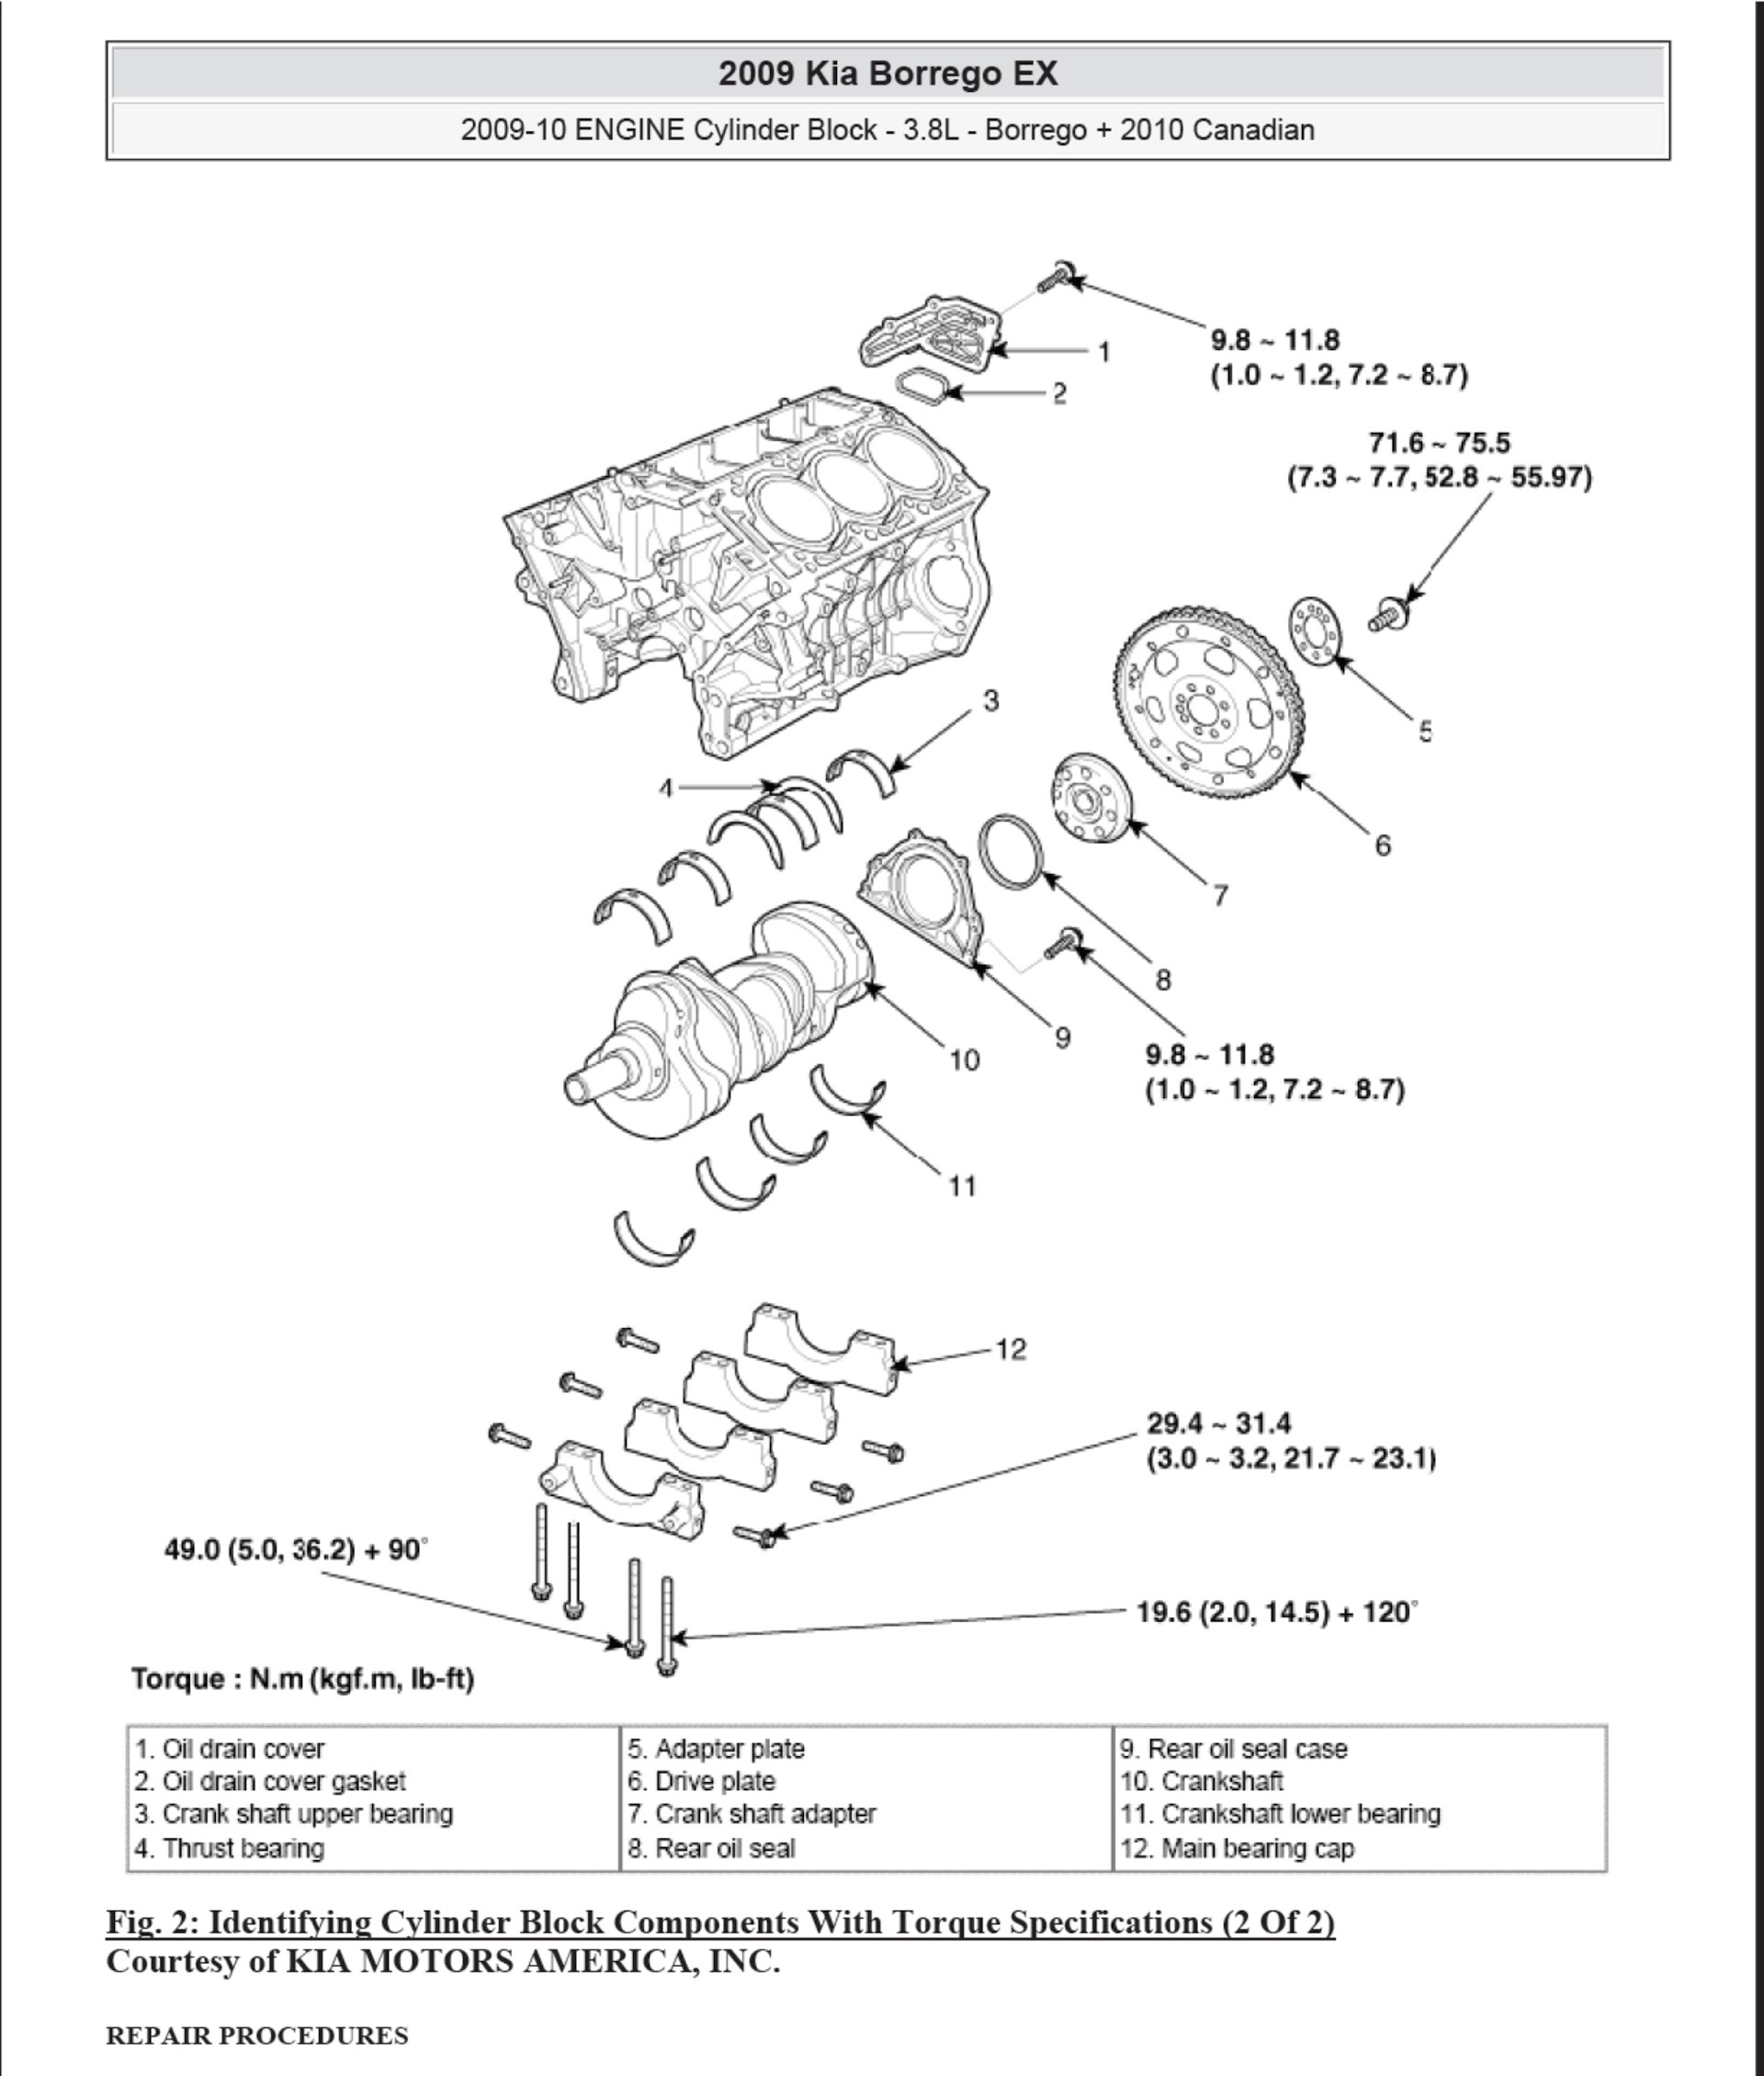 Download 2008-2010 Kia Borrego (Mohave) Repair Manual